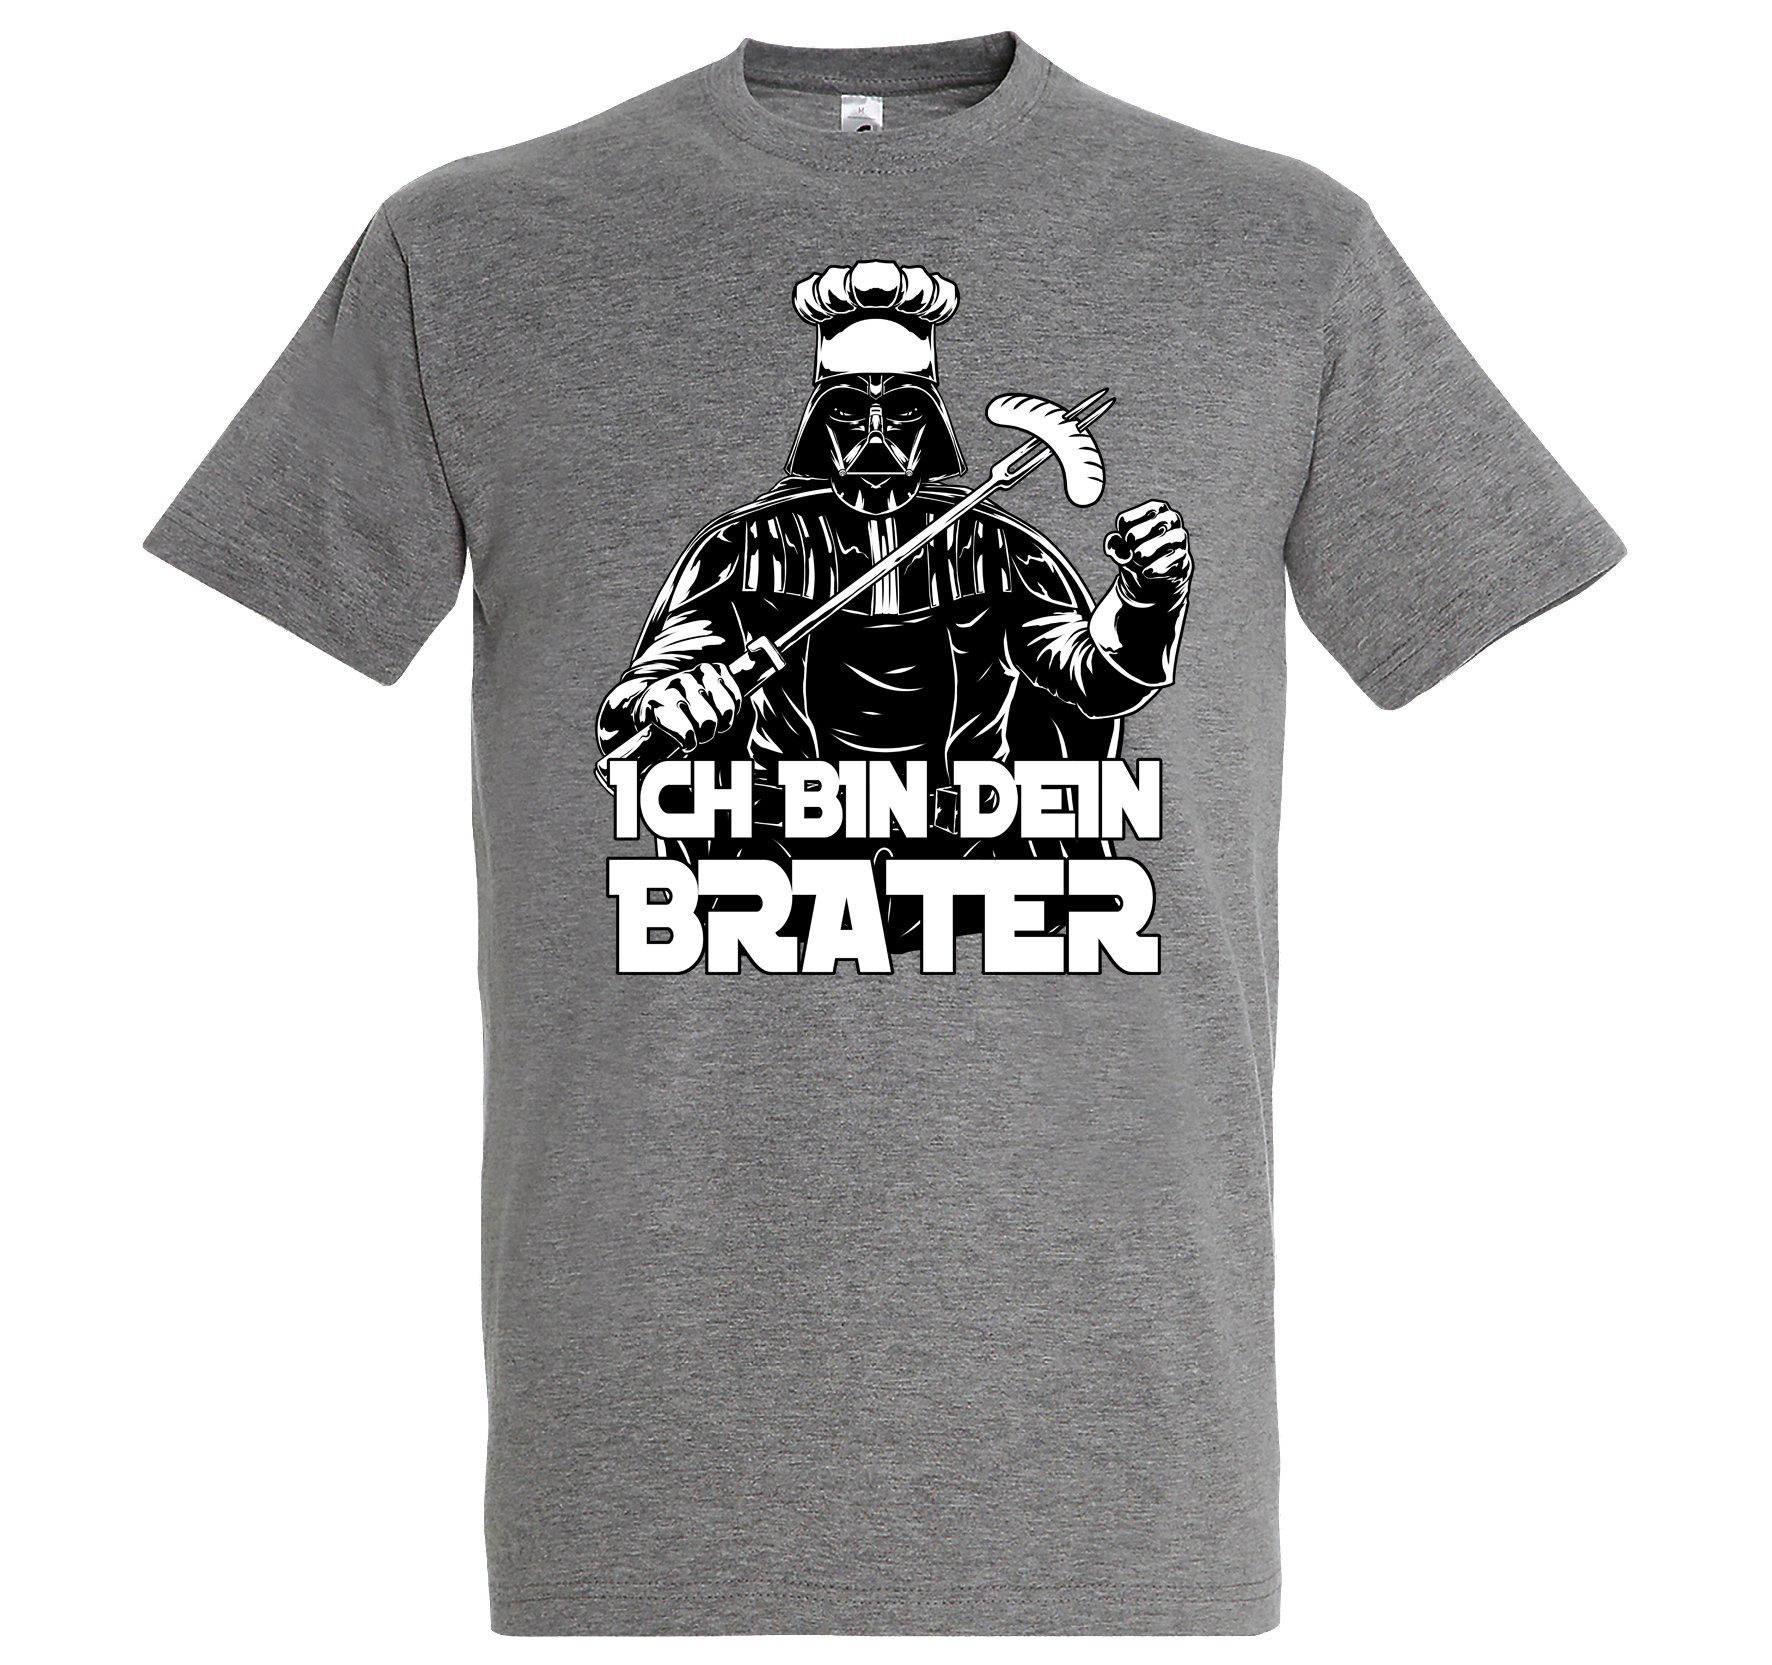 Designz Herren "Ich T-Shirt Grau T-Shirt Youth lustigem Brater" mit bin Spruch